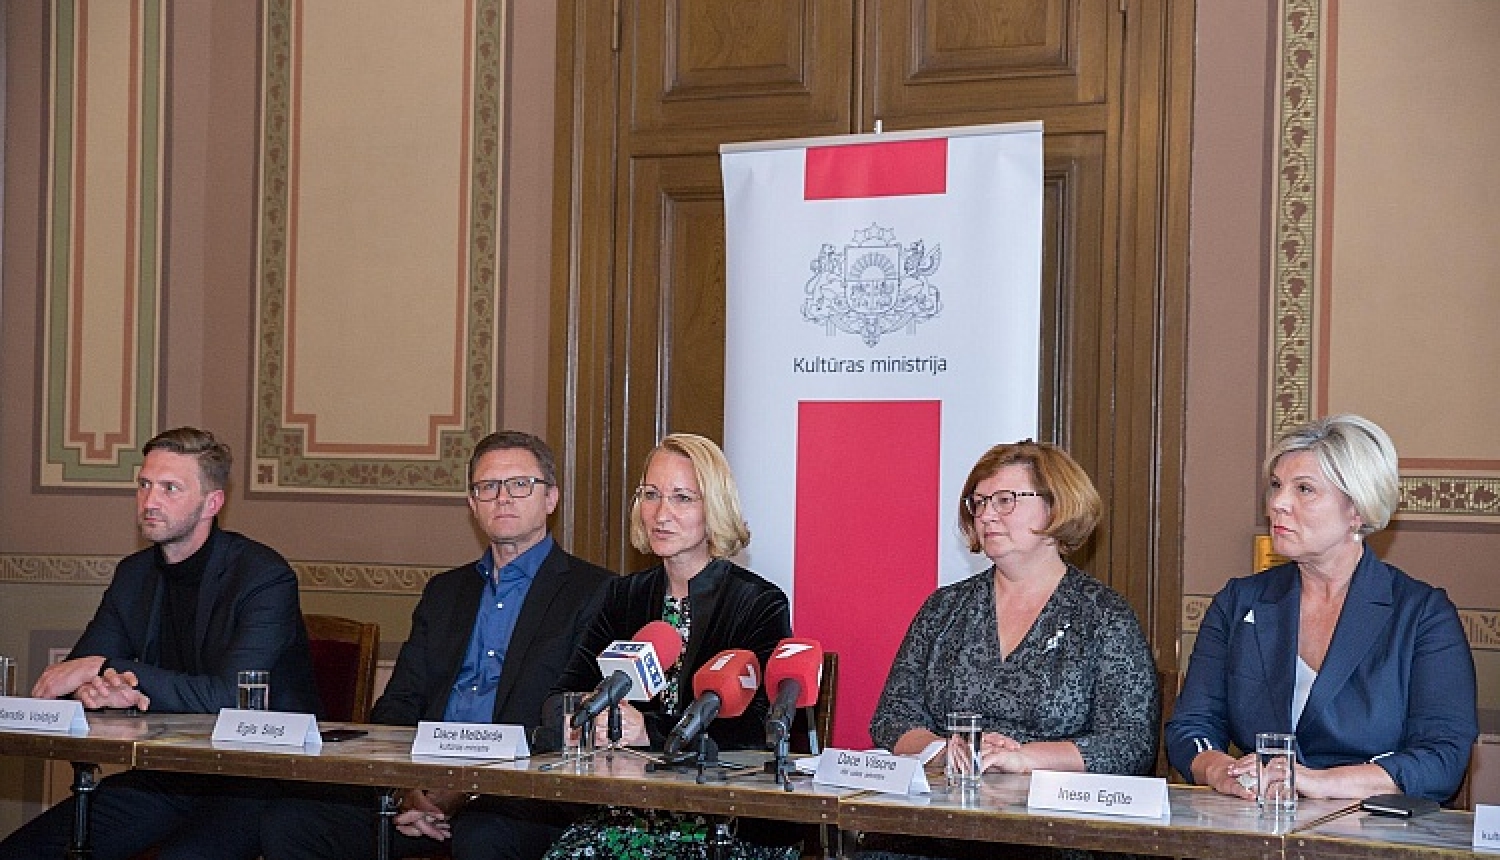 Latvijas Nacionālās operas un baleta valdes konkursā uzvarējuši Egils Siliņš, Sandis Voldiņš un Inese Eglīte